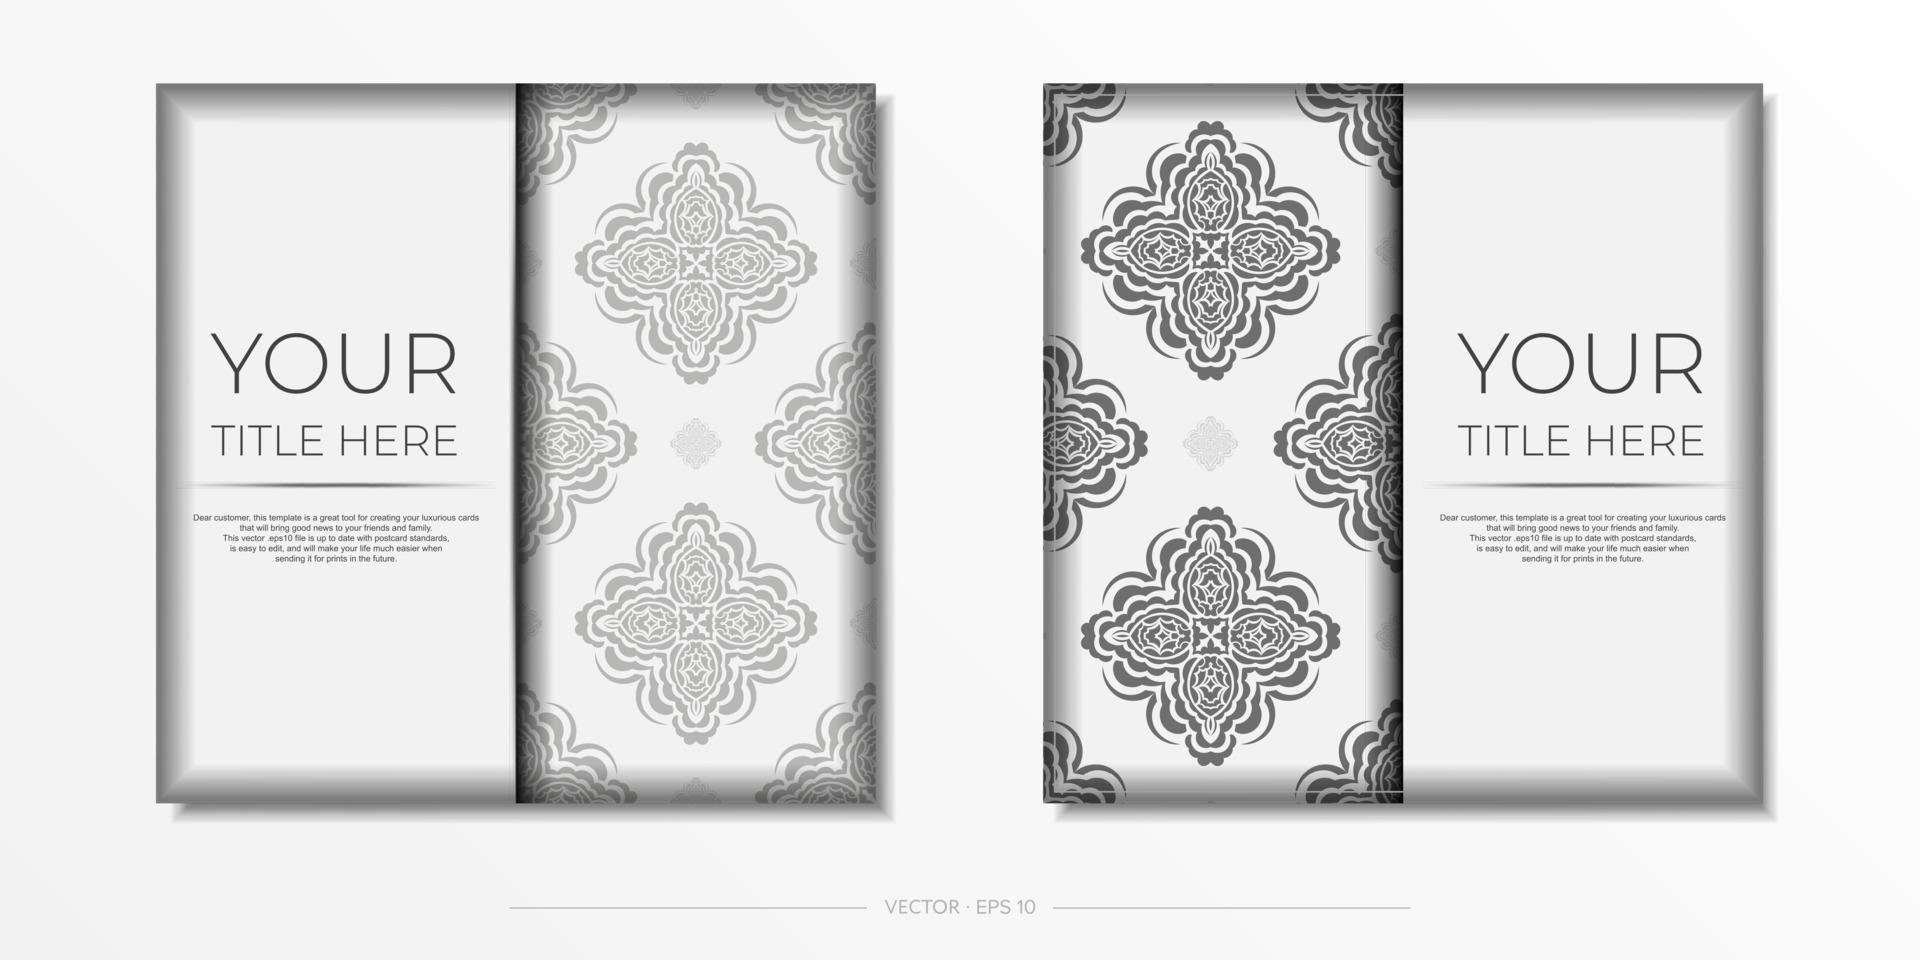 couleurs blanches de carte postale avec ornement indien. conception de cartes d'invitation avec des motifs de mandala. vecteur